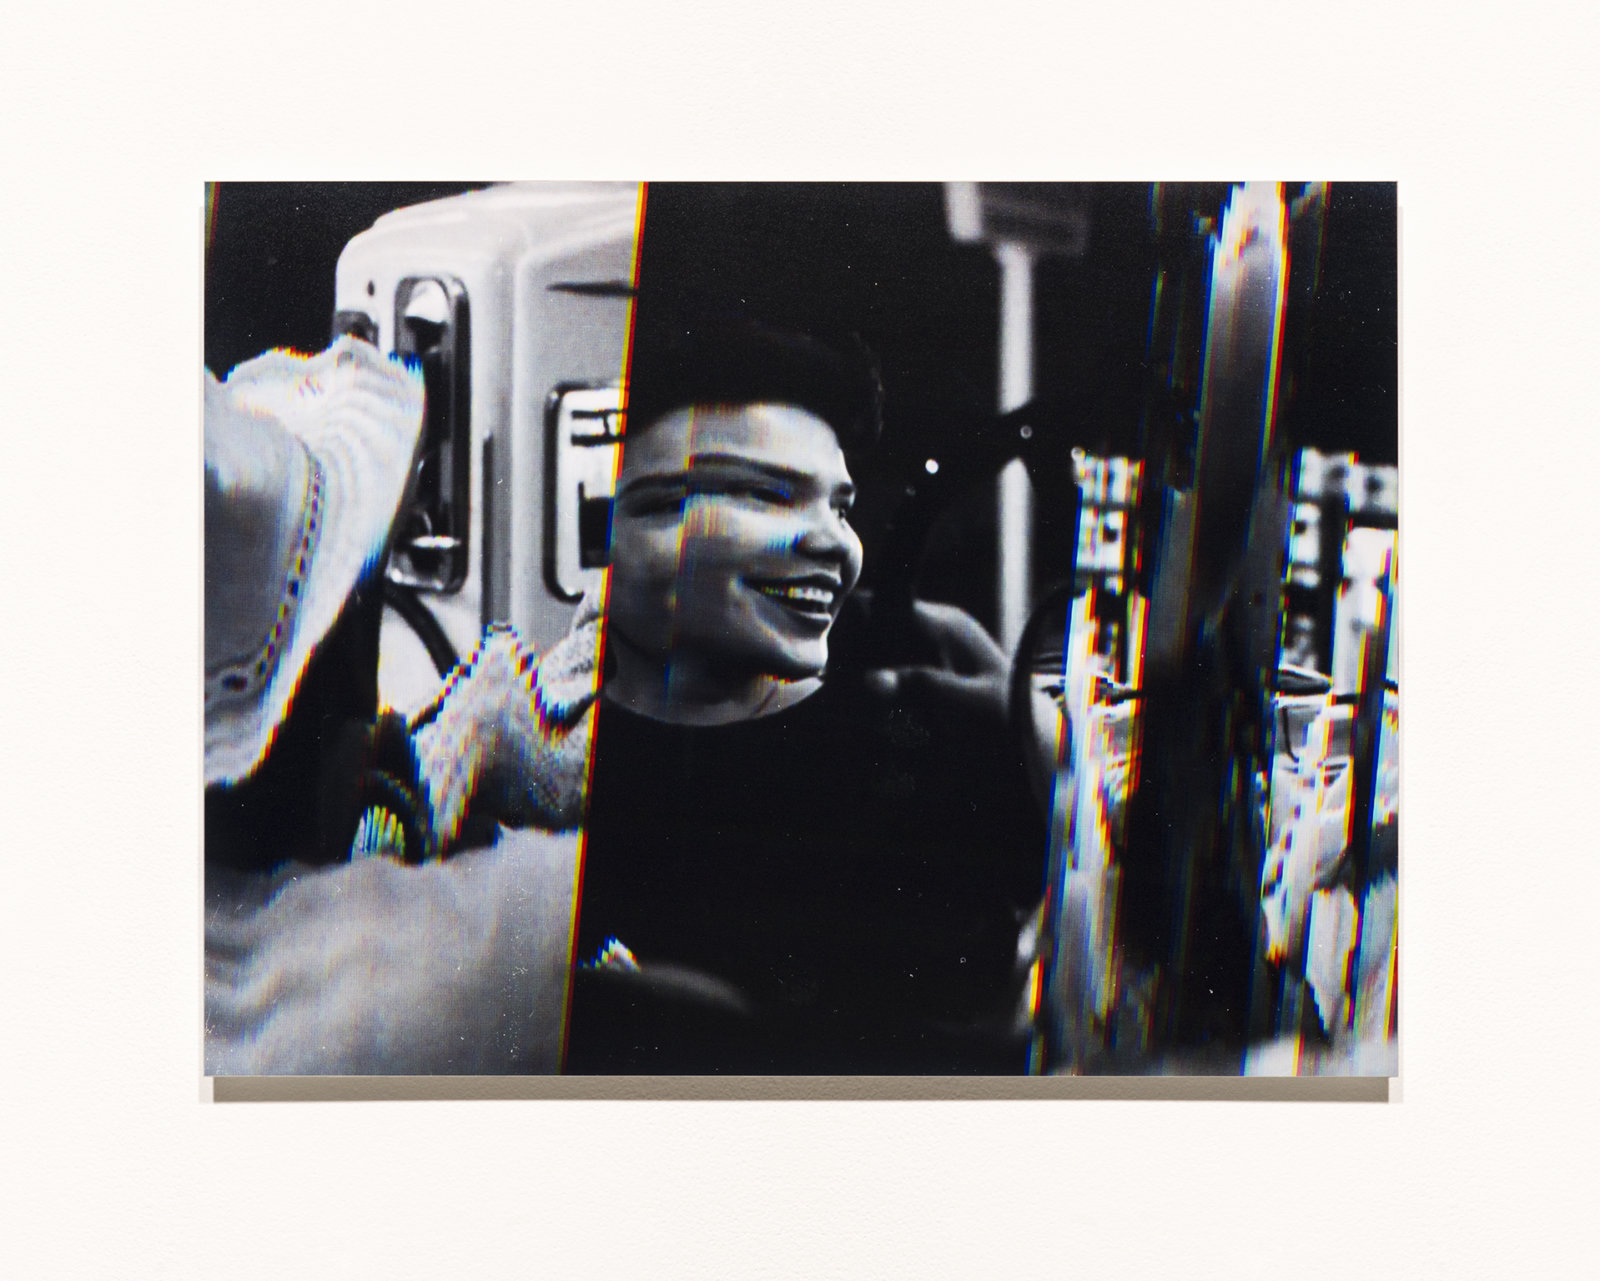 Raymond Boisjoly, Station to Station, 2014, 5 screen resolution lightjet print mounted on dibond, each 18 x 24 in. (46 x 61 cm)